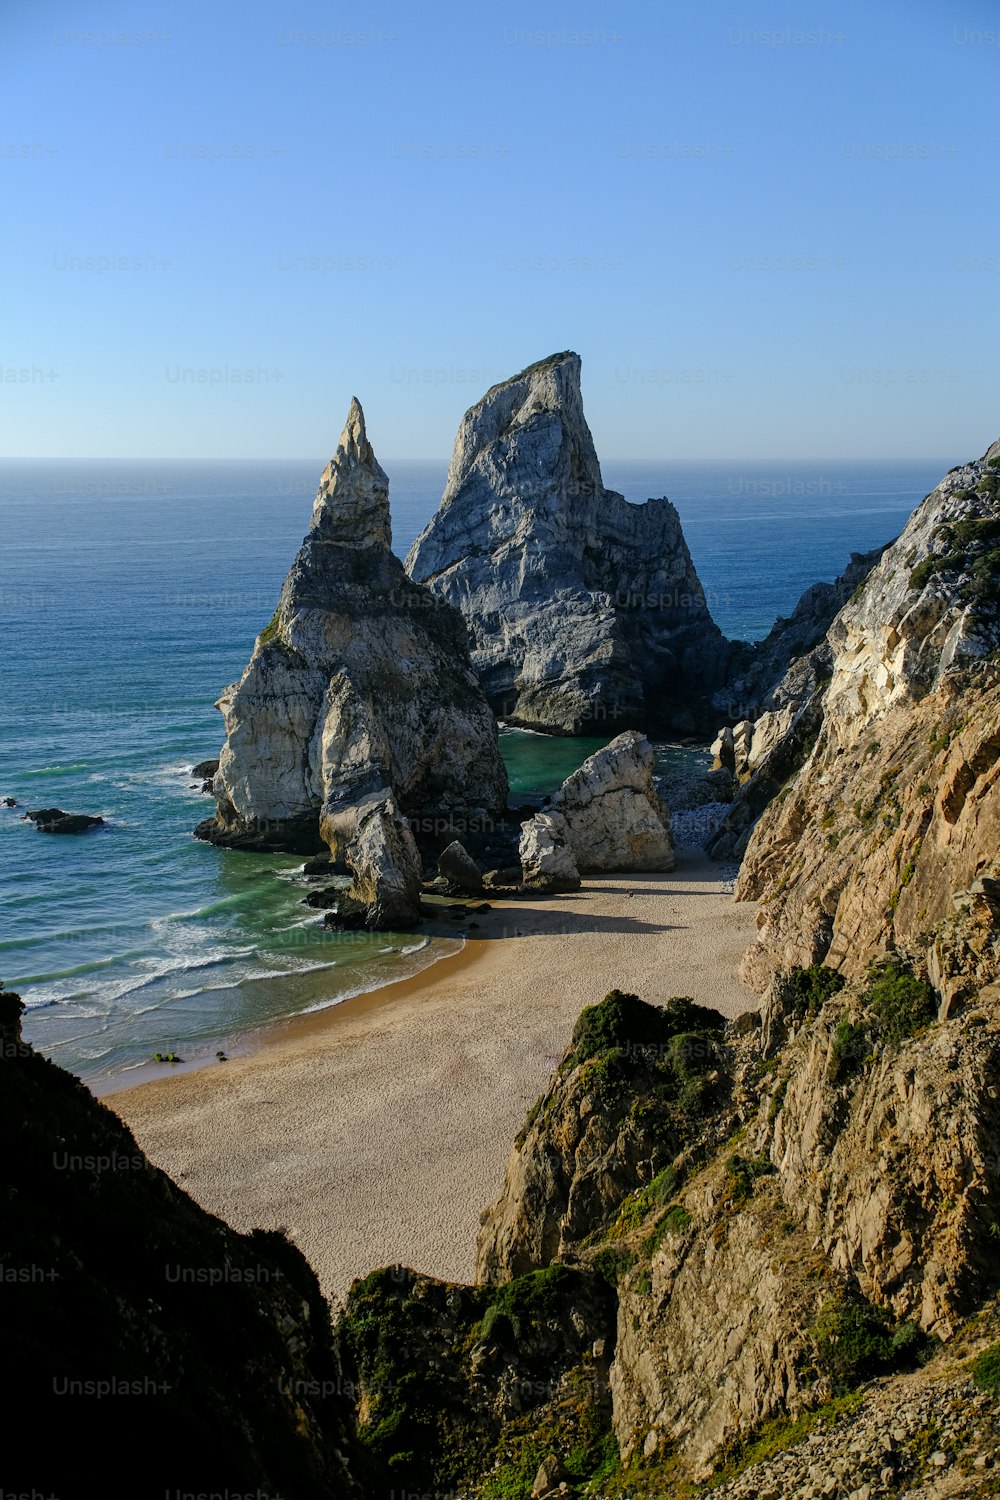 Una playa rocosa con algunas rocas que sobresalen del agua